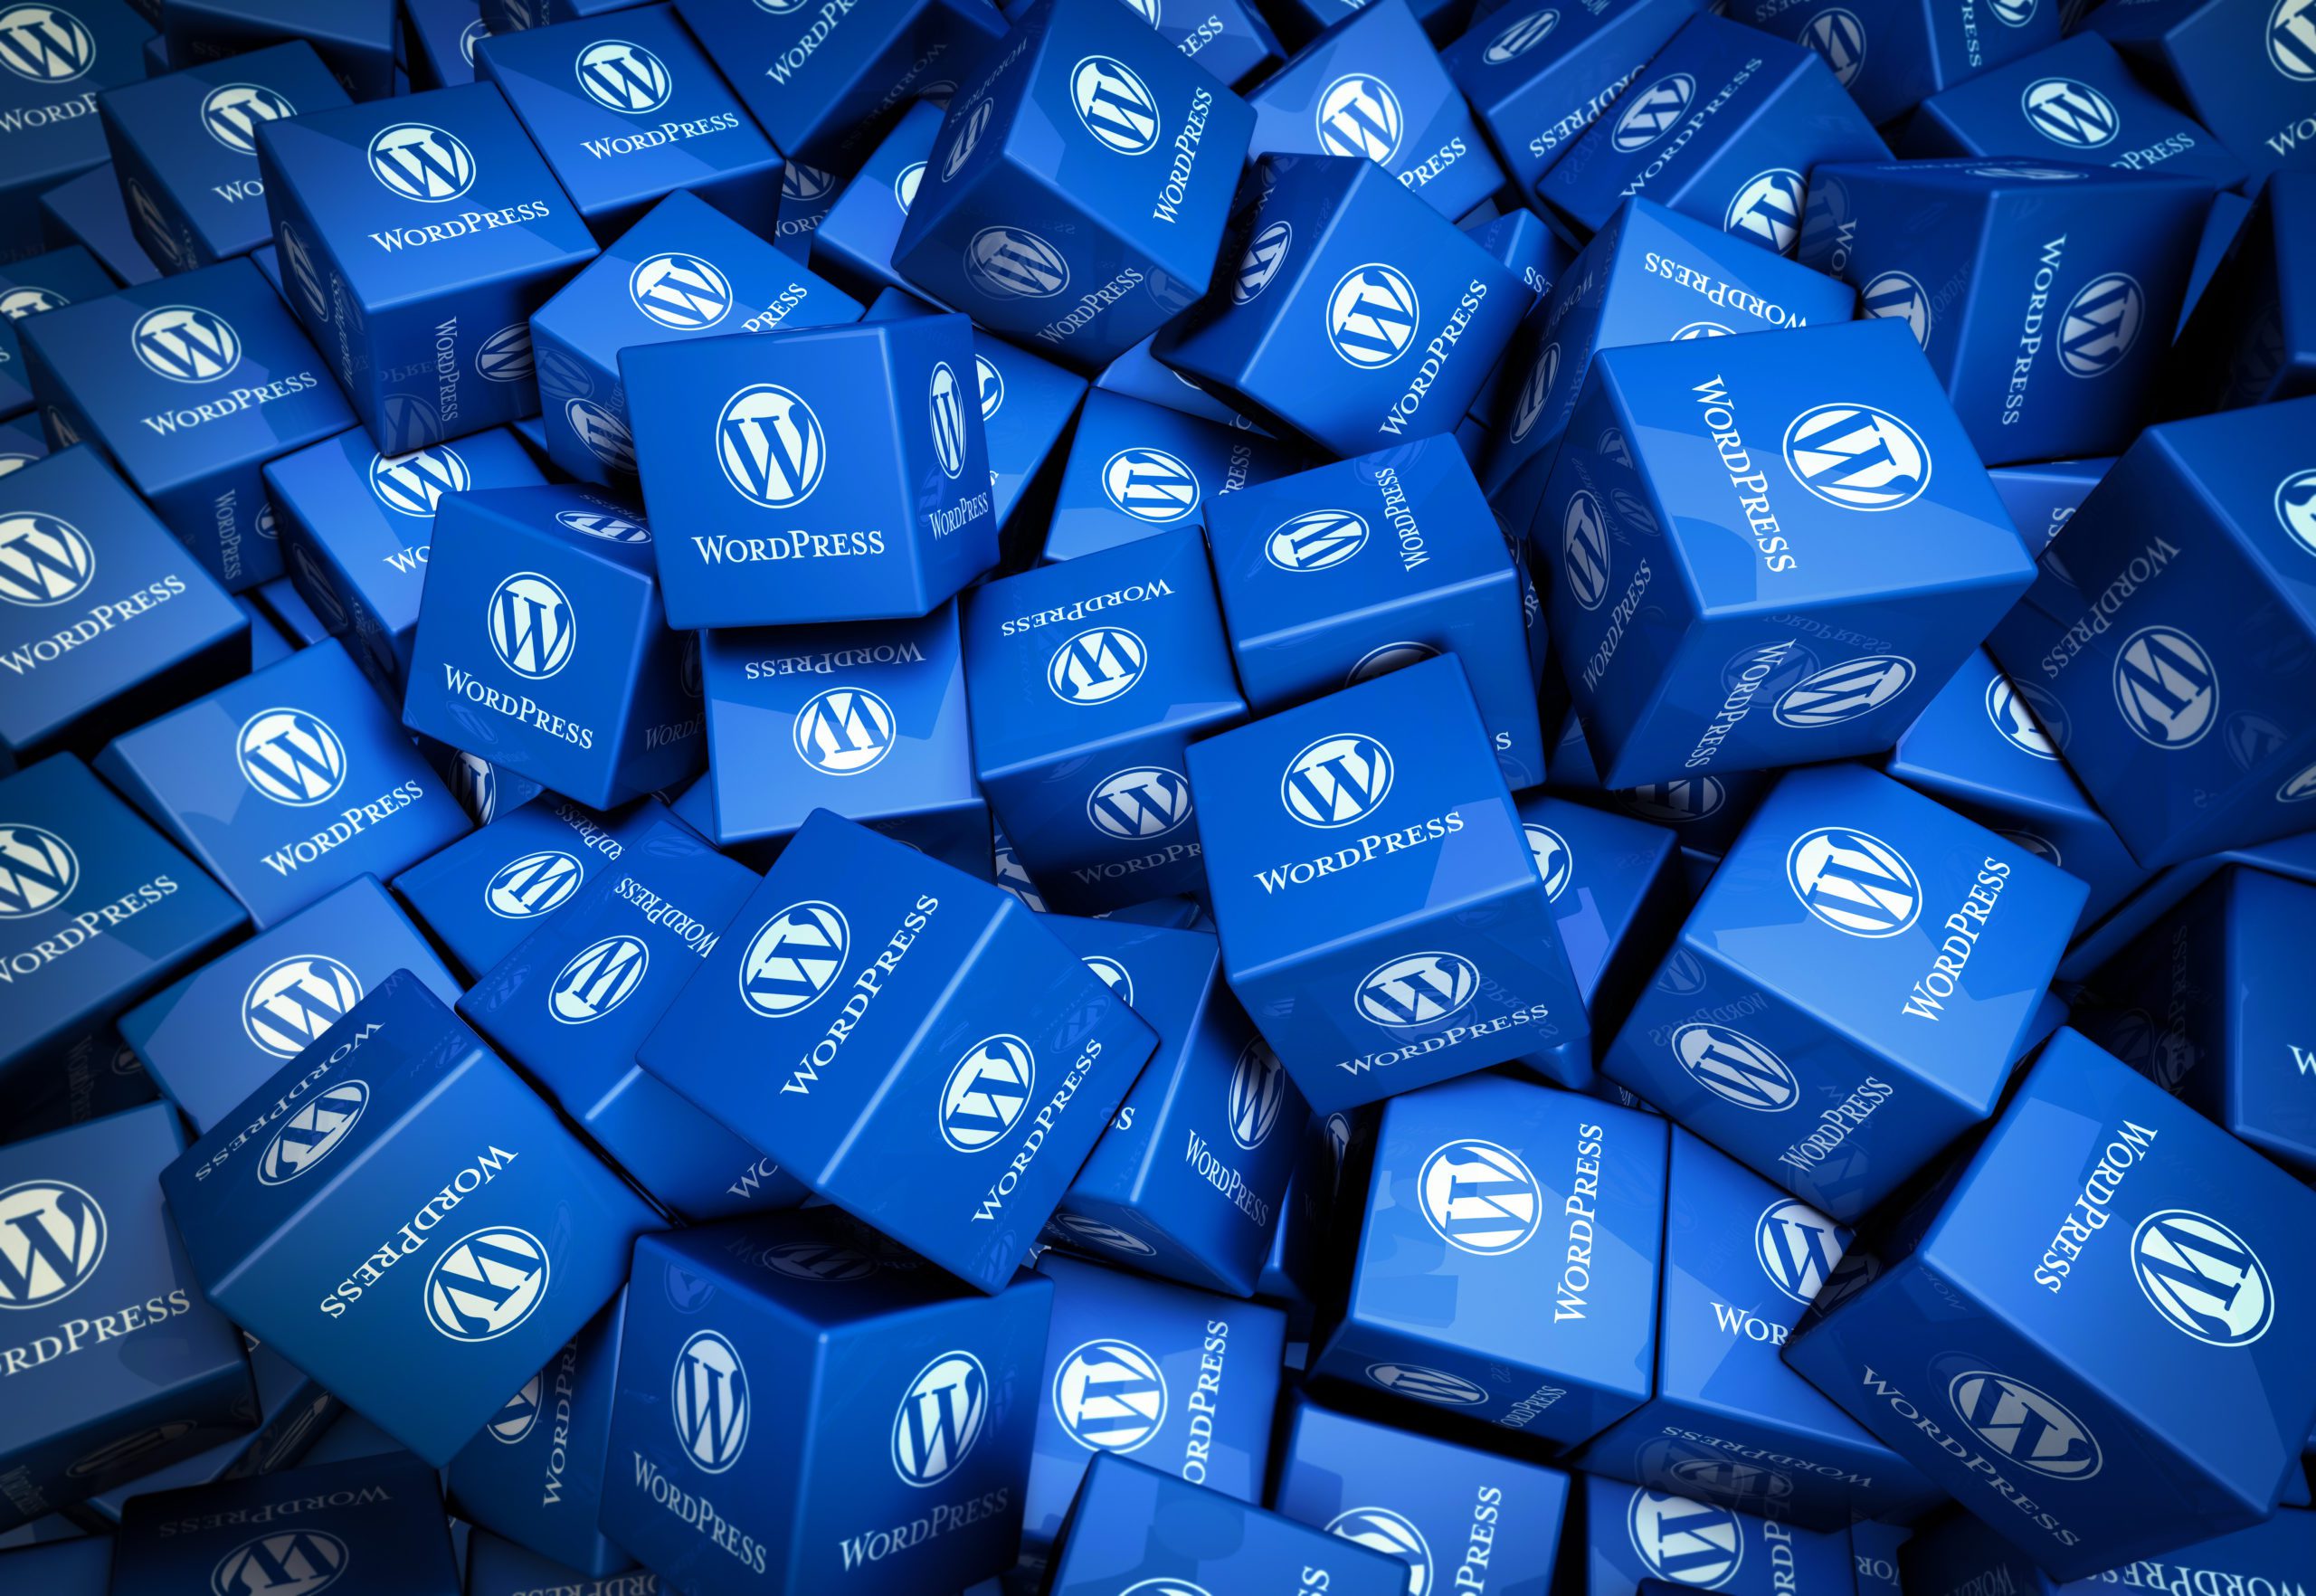 Squares with WordPress logos